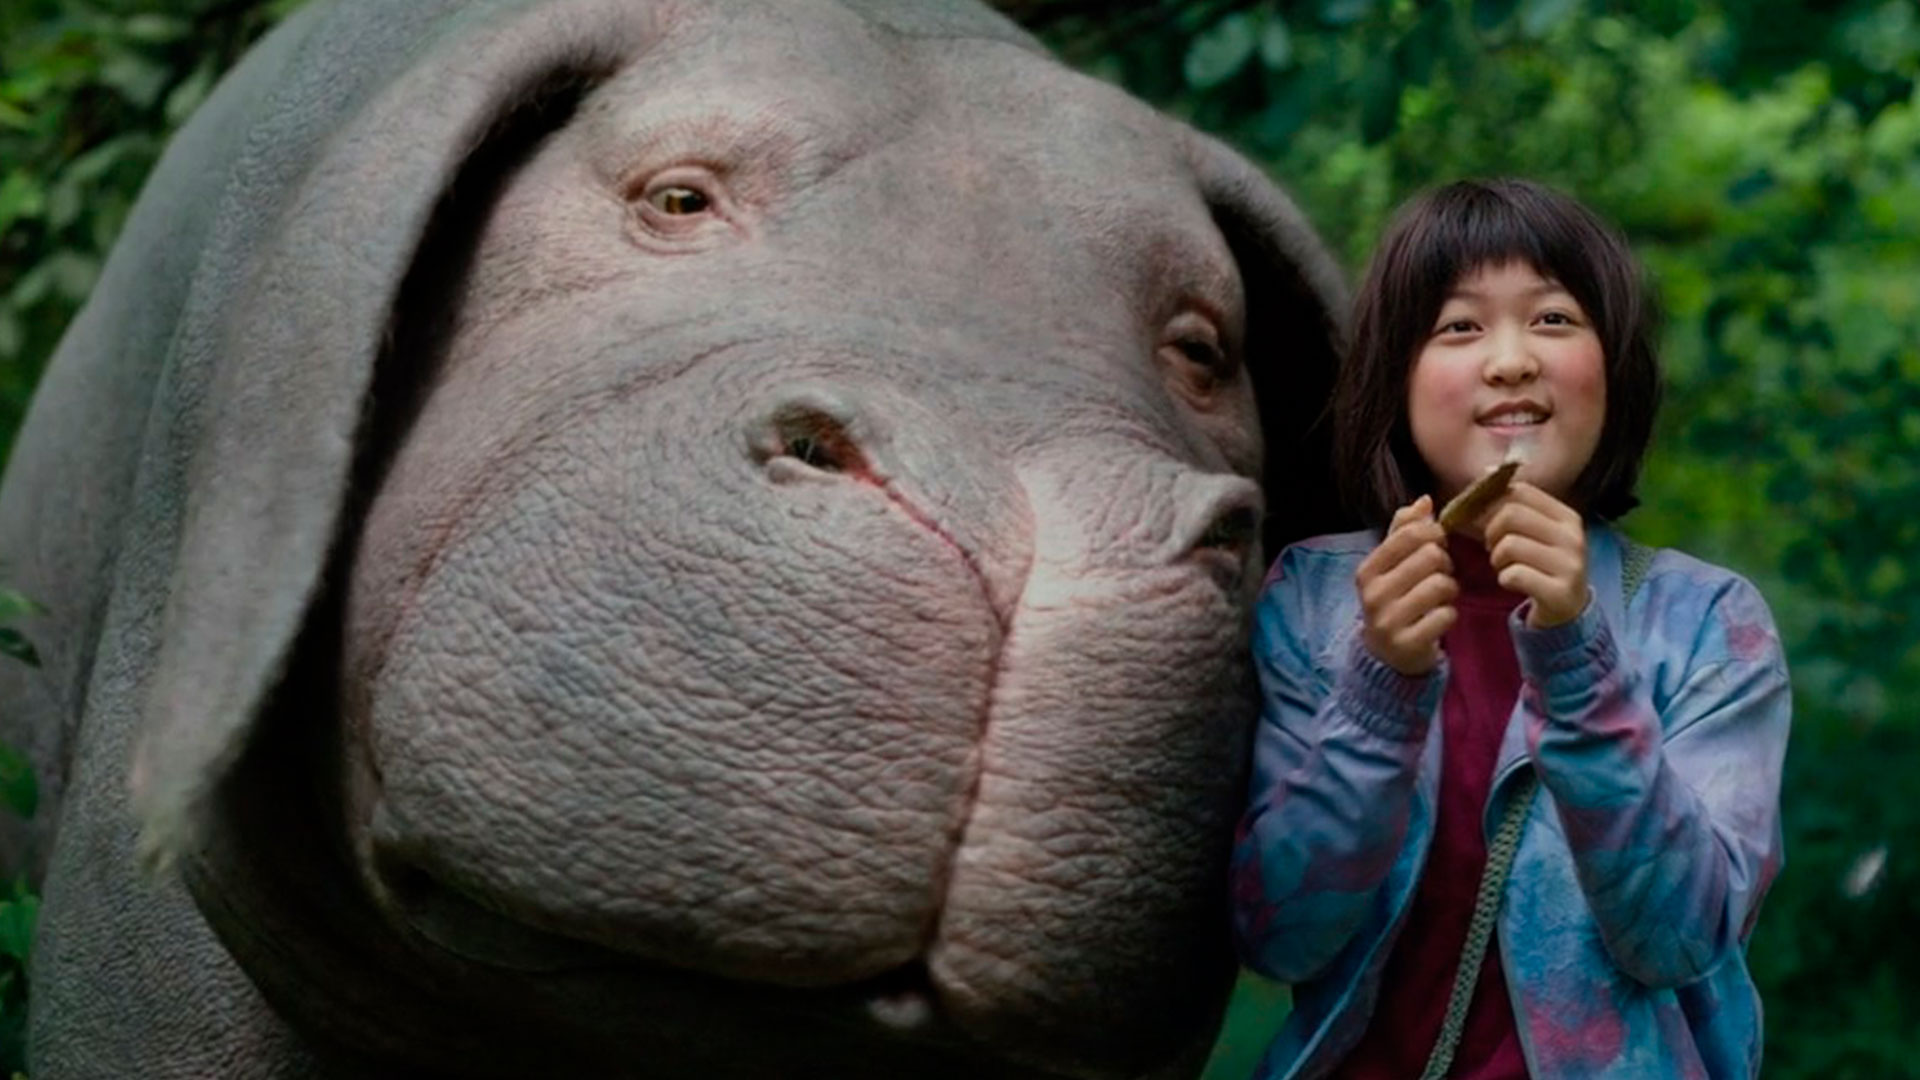 Cena do filme Okja mostra menina ao lado de porca gigante